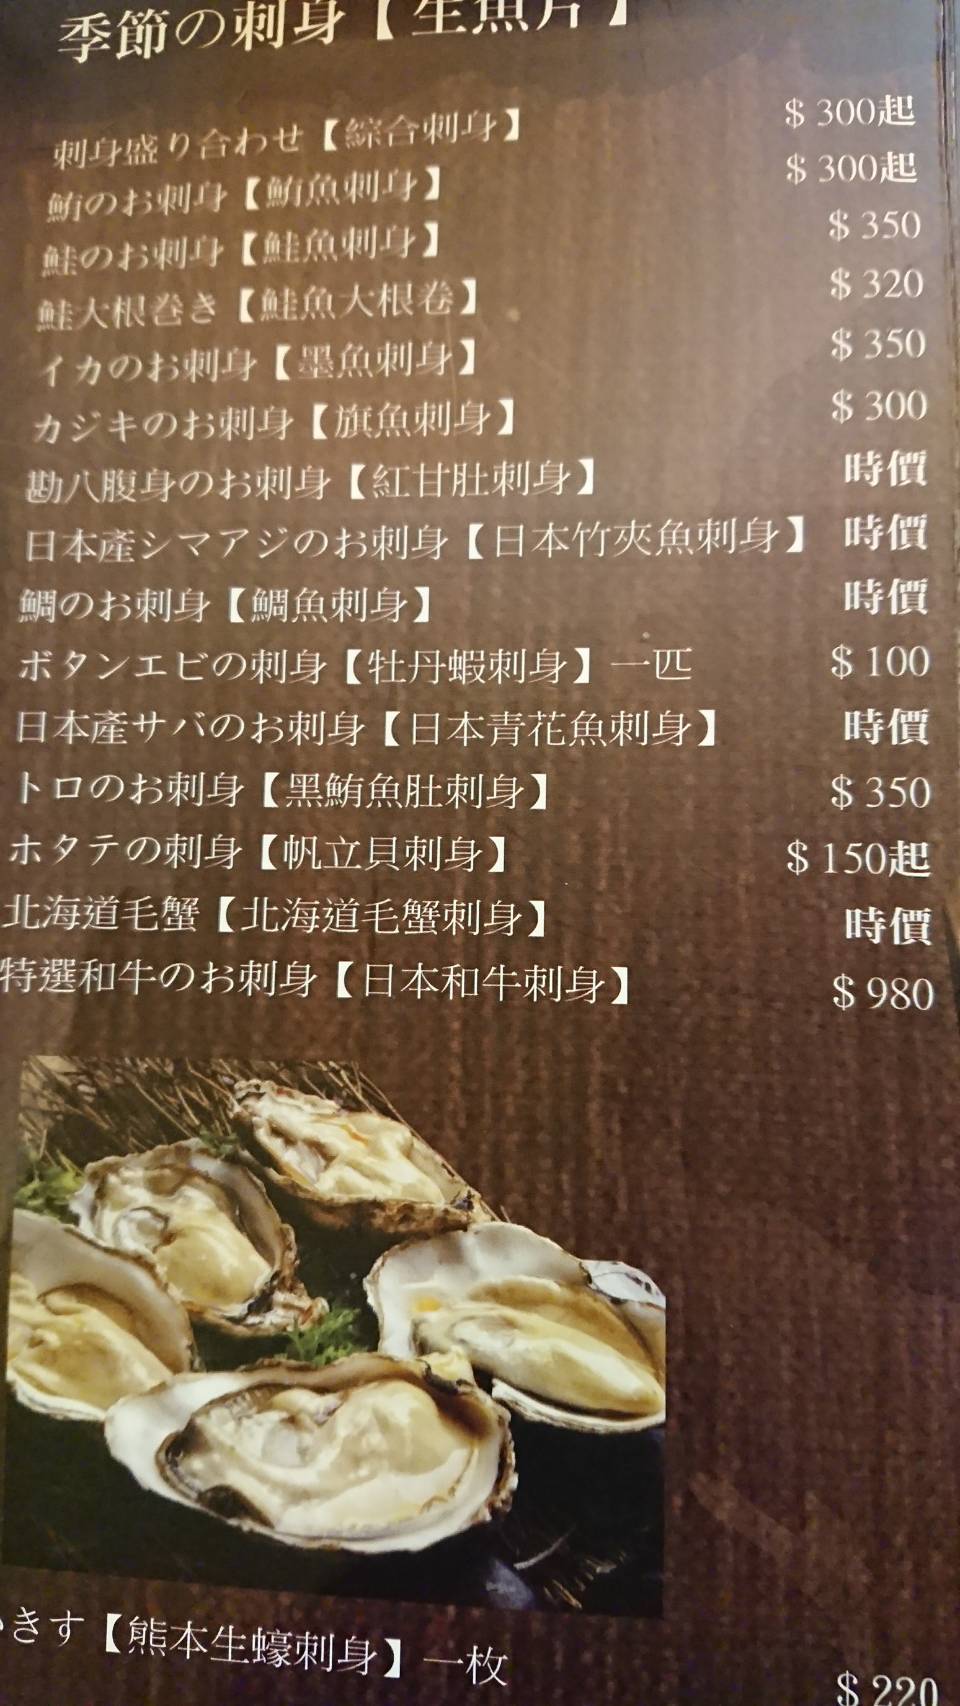 【花蓮】一味屋日本料理 鎮樓海鮮 人氣握壽司｜宅喵 - 鎮樓海鮮 - 敗家達人推薦